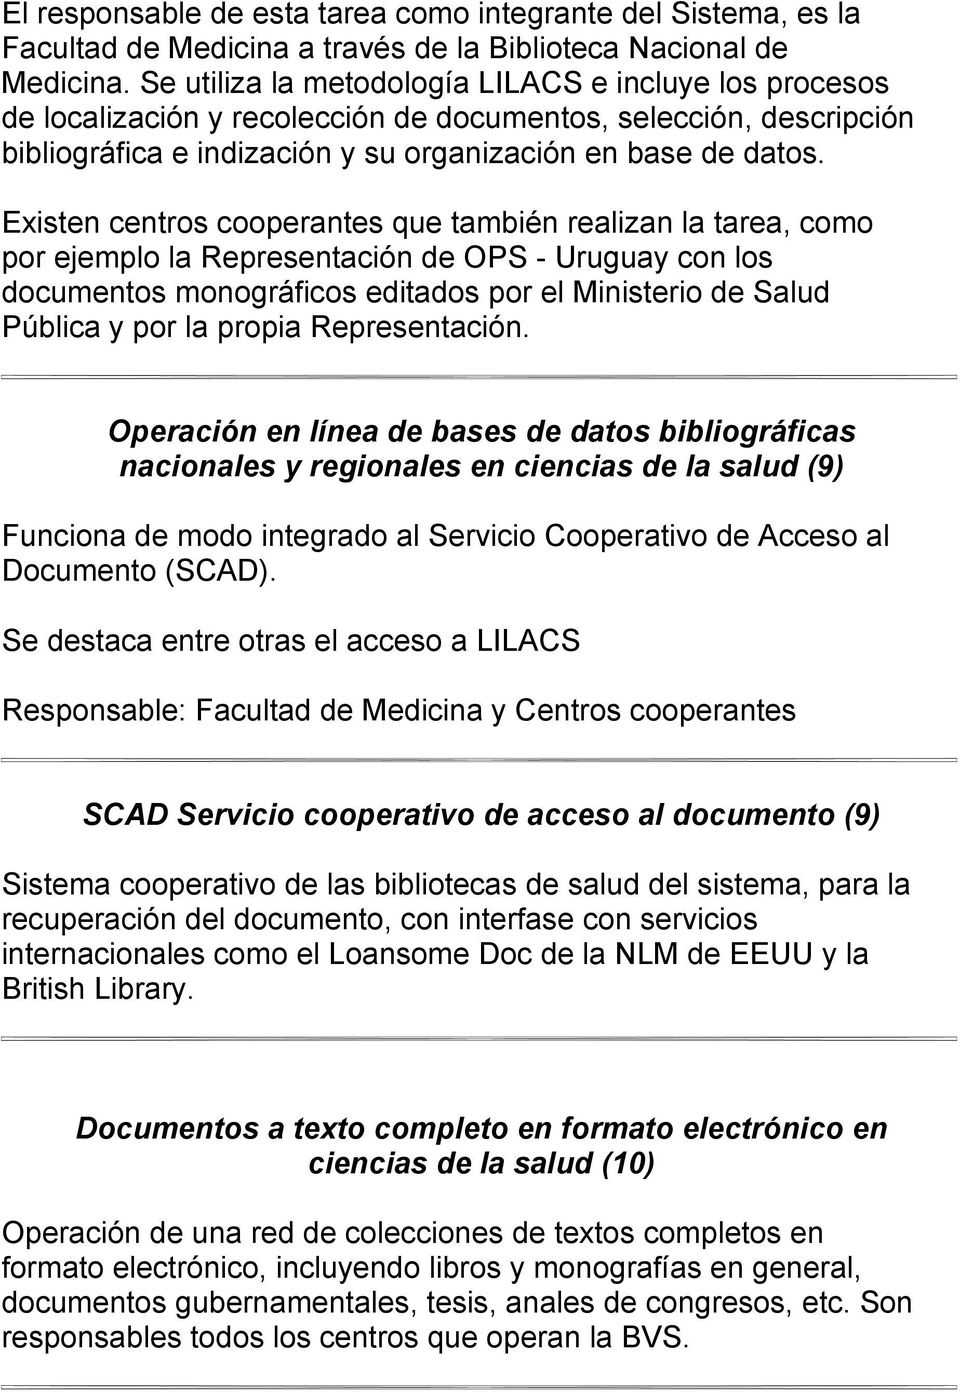 Existen centros cooperantes que también realizan la tarea, como por ejemplo la Representación de OPS - Uruguay con los documentos monográficos editados por el Ministerio de Salud Pública y por la